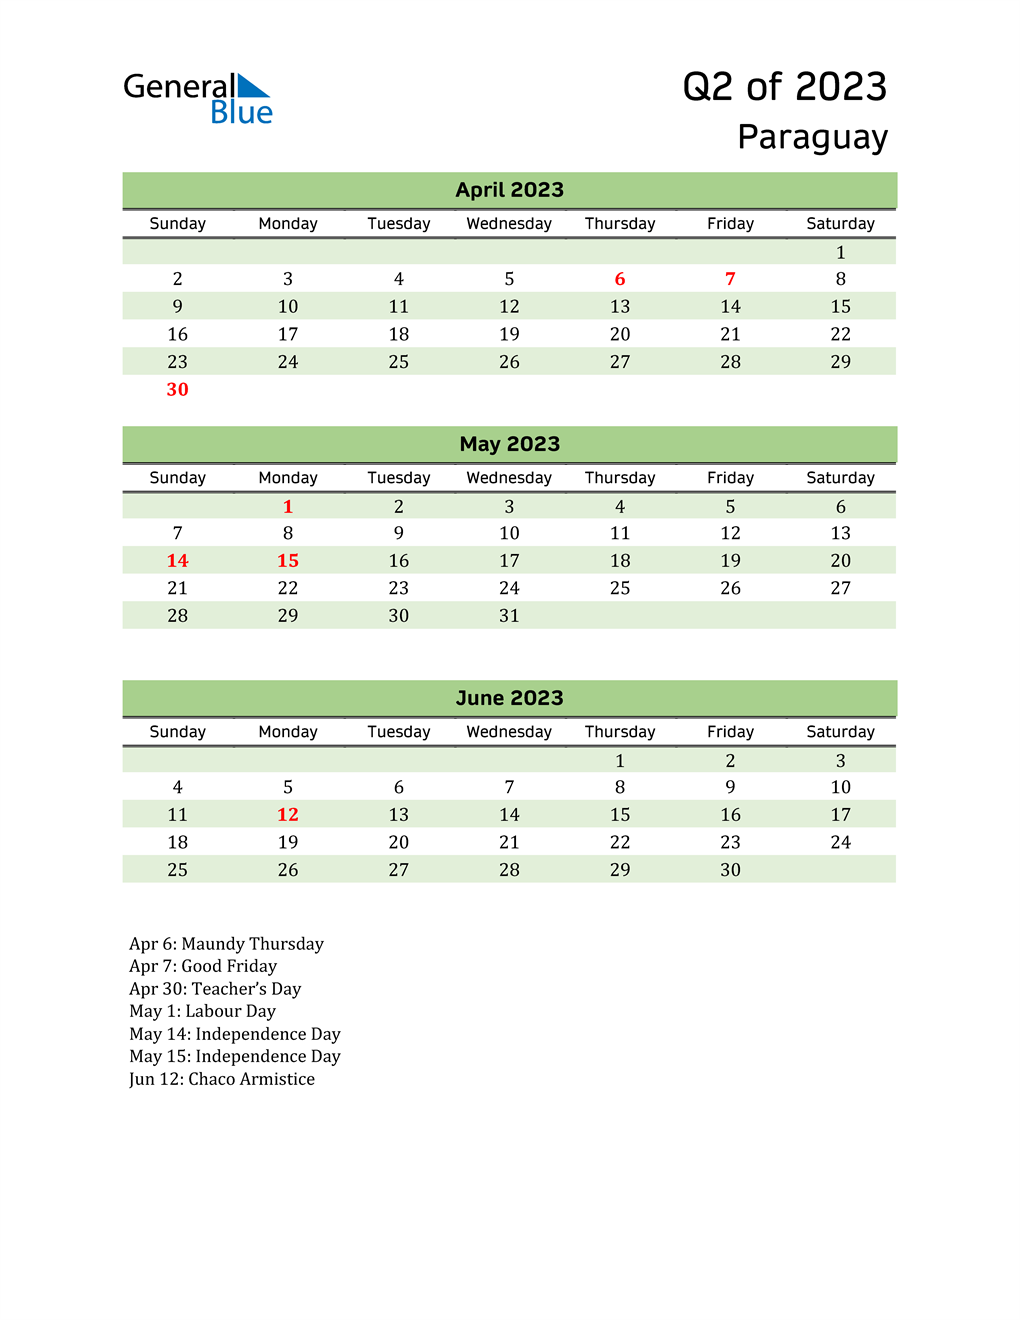  Quarterly Calendar 2023 with Paraguay Holidays 